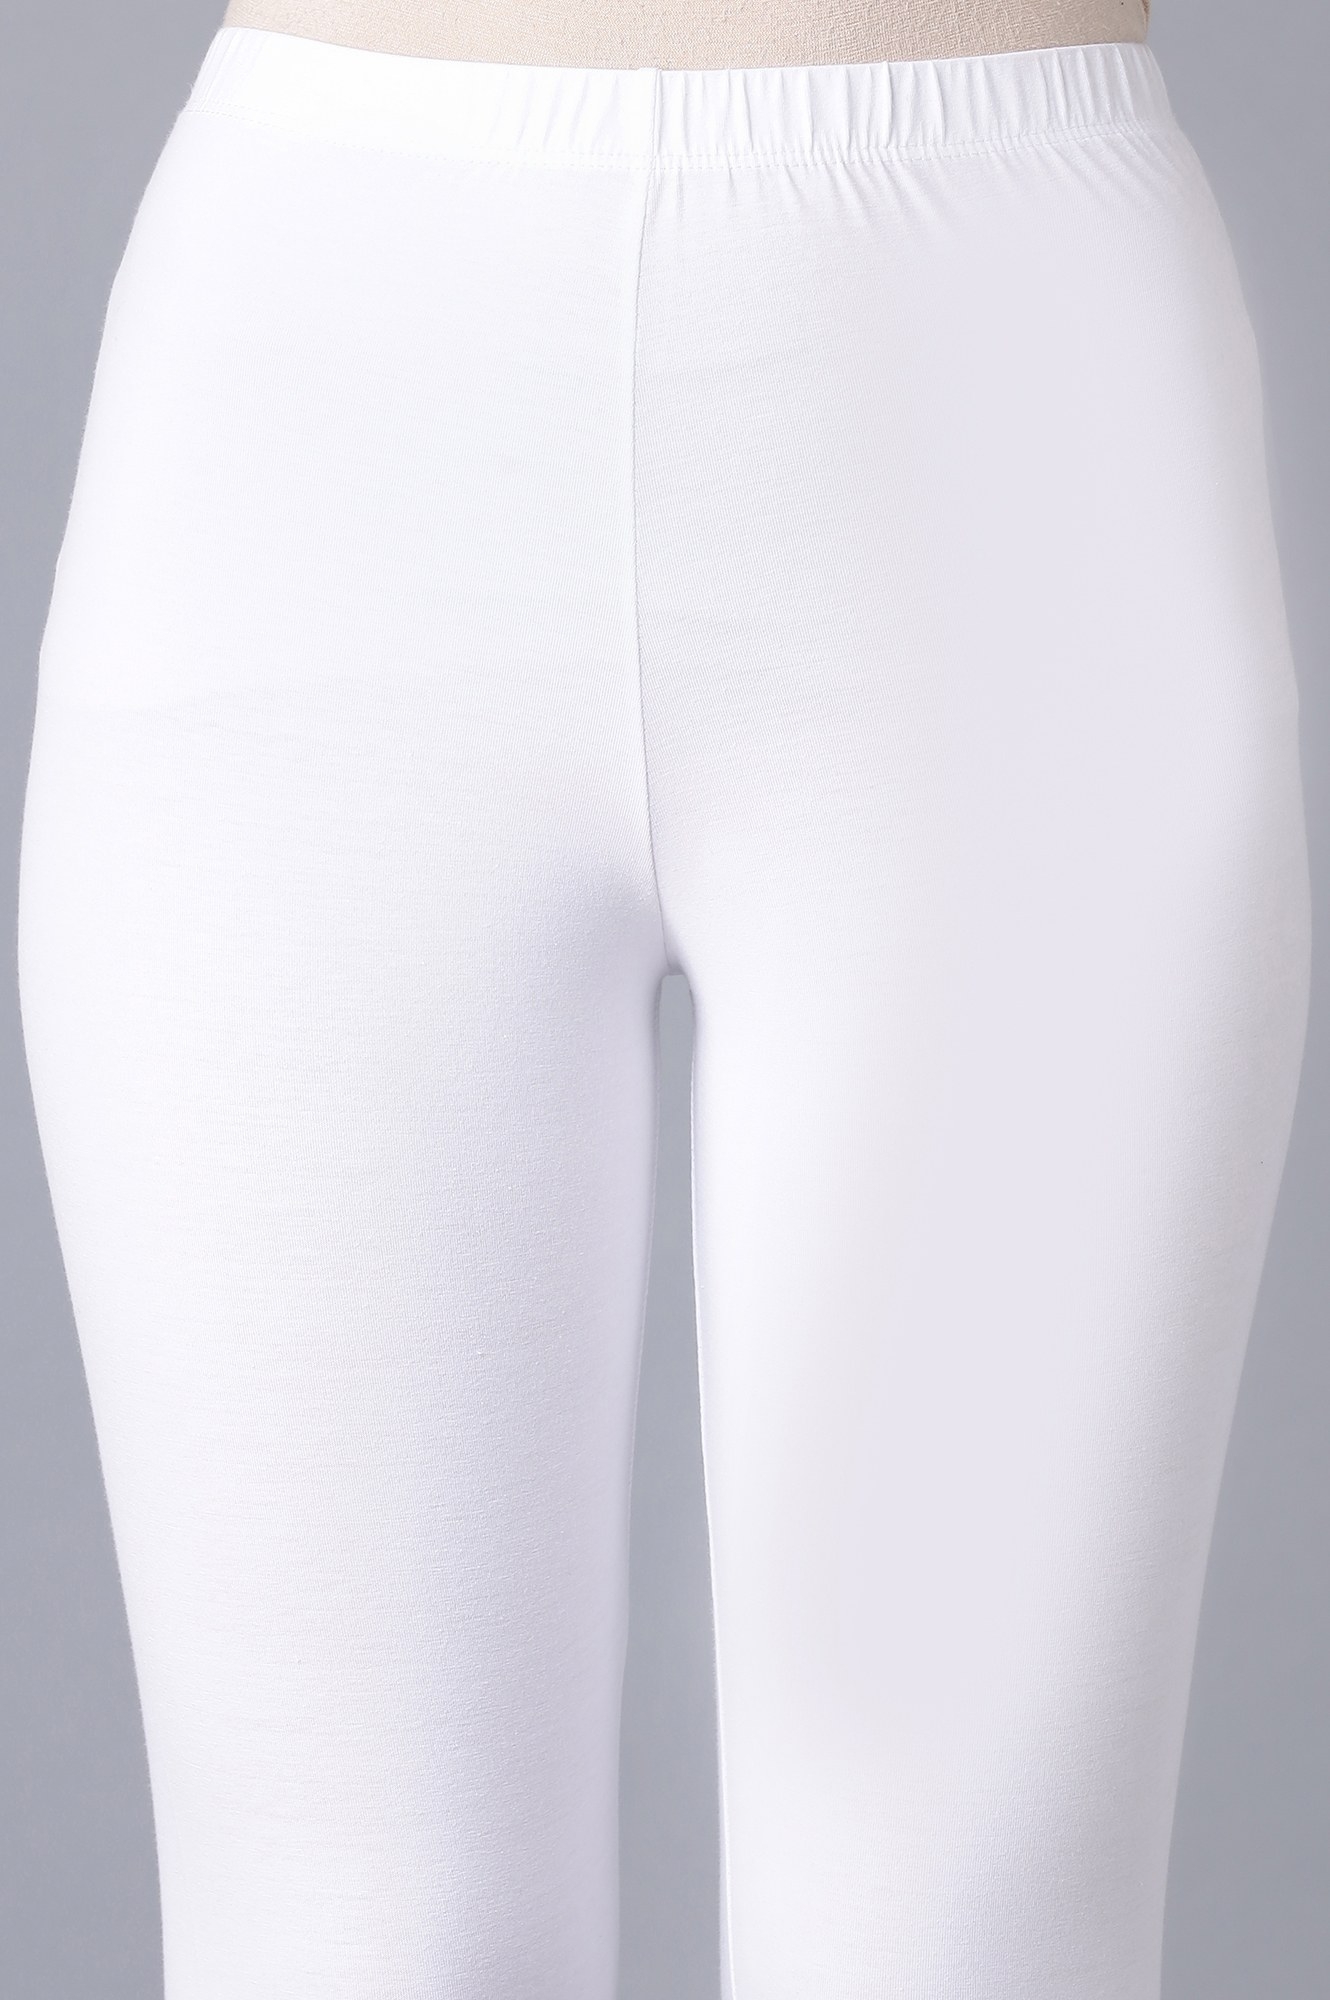 EZIFIT Cotton Lycra Tights WHITE – Ezifit - comfort wear